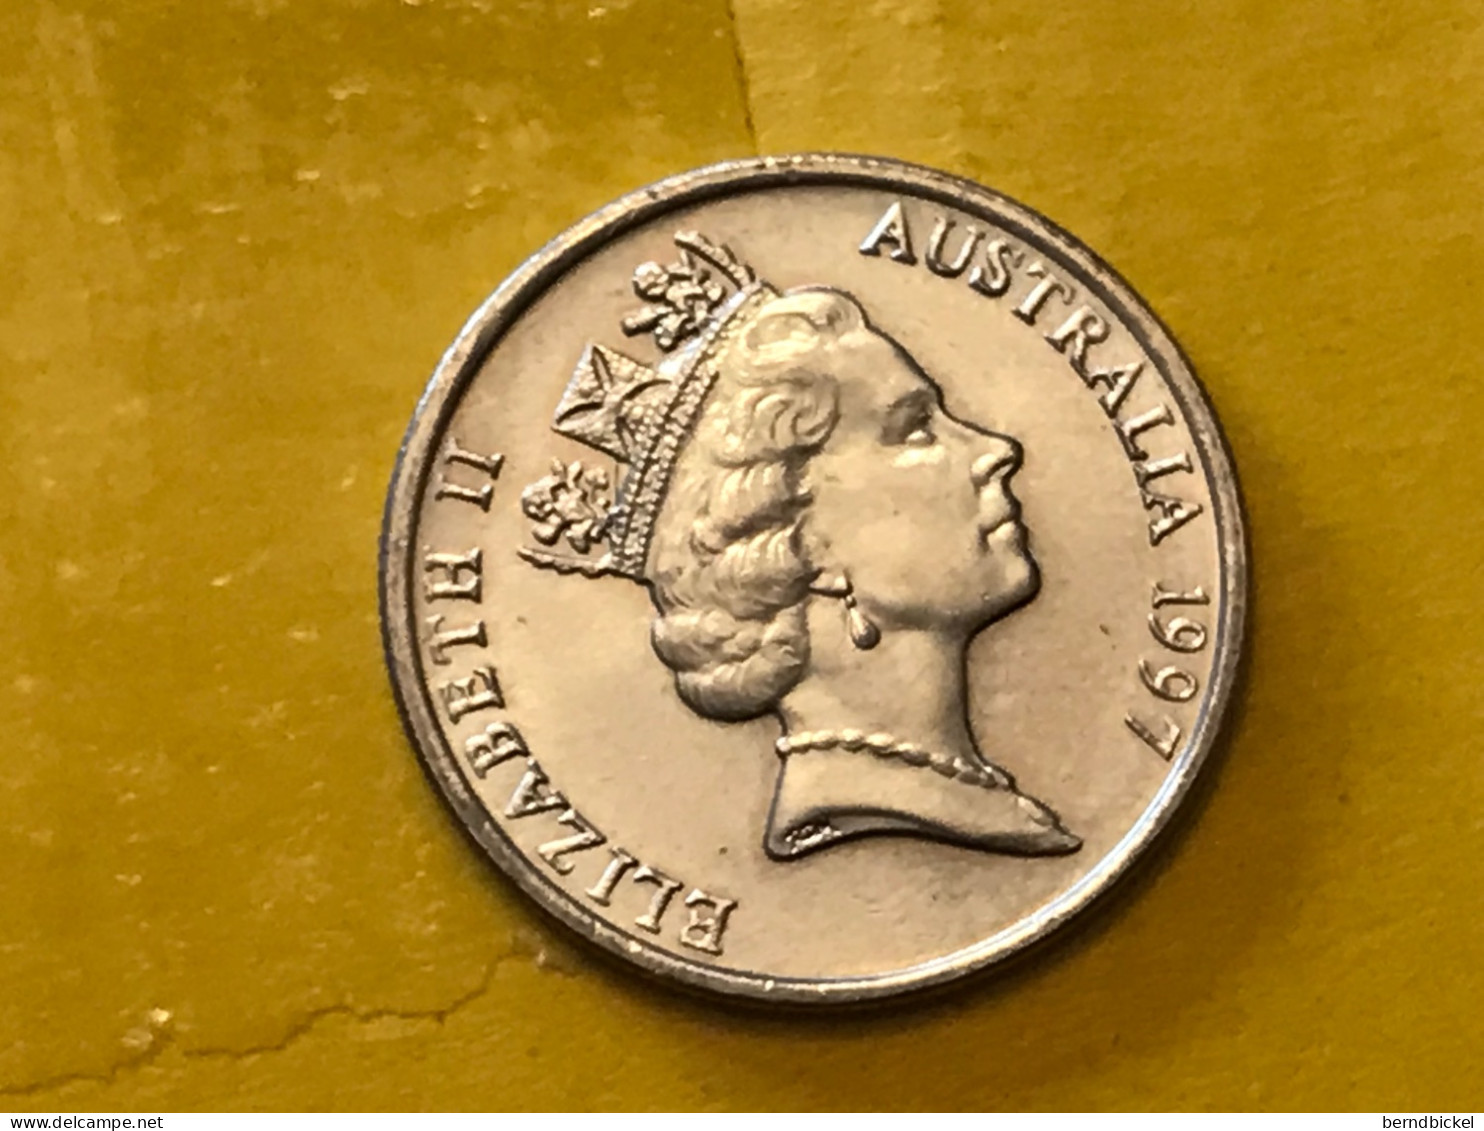 Münze Münzen Umlaufmünze Australien 5 Cents 1997 - 5 Cents